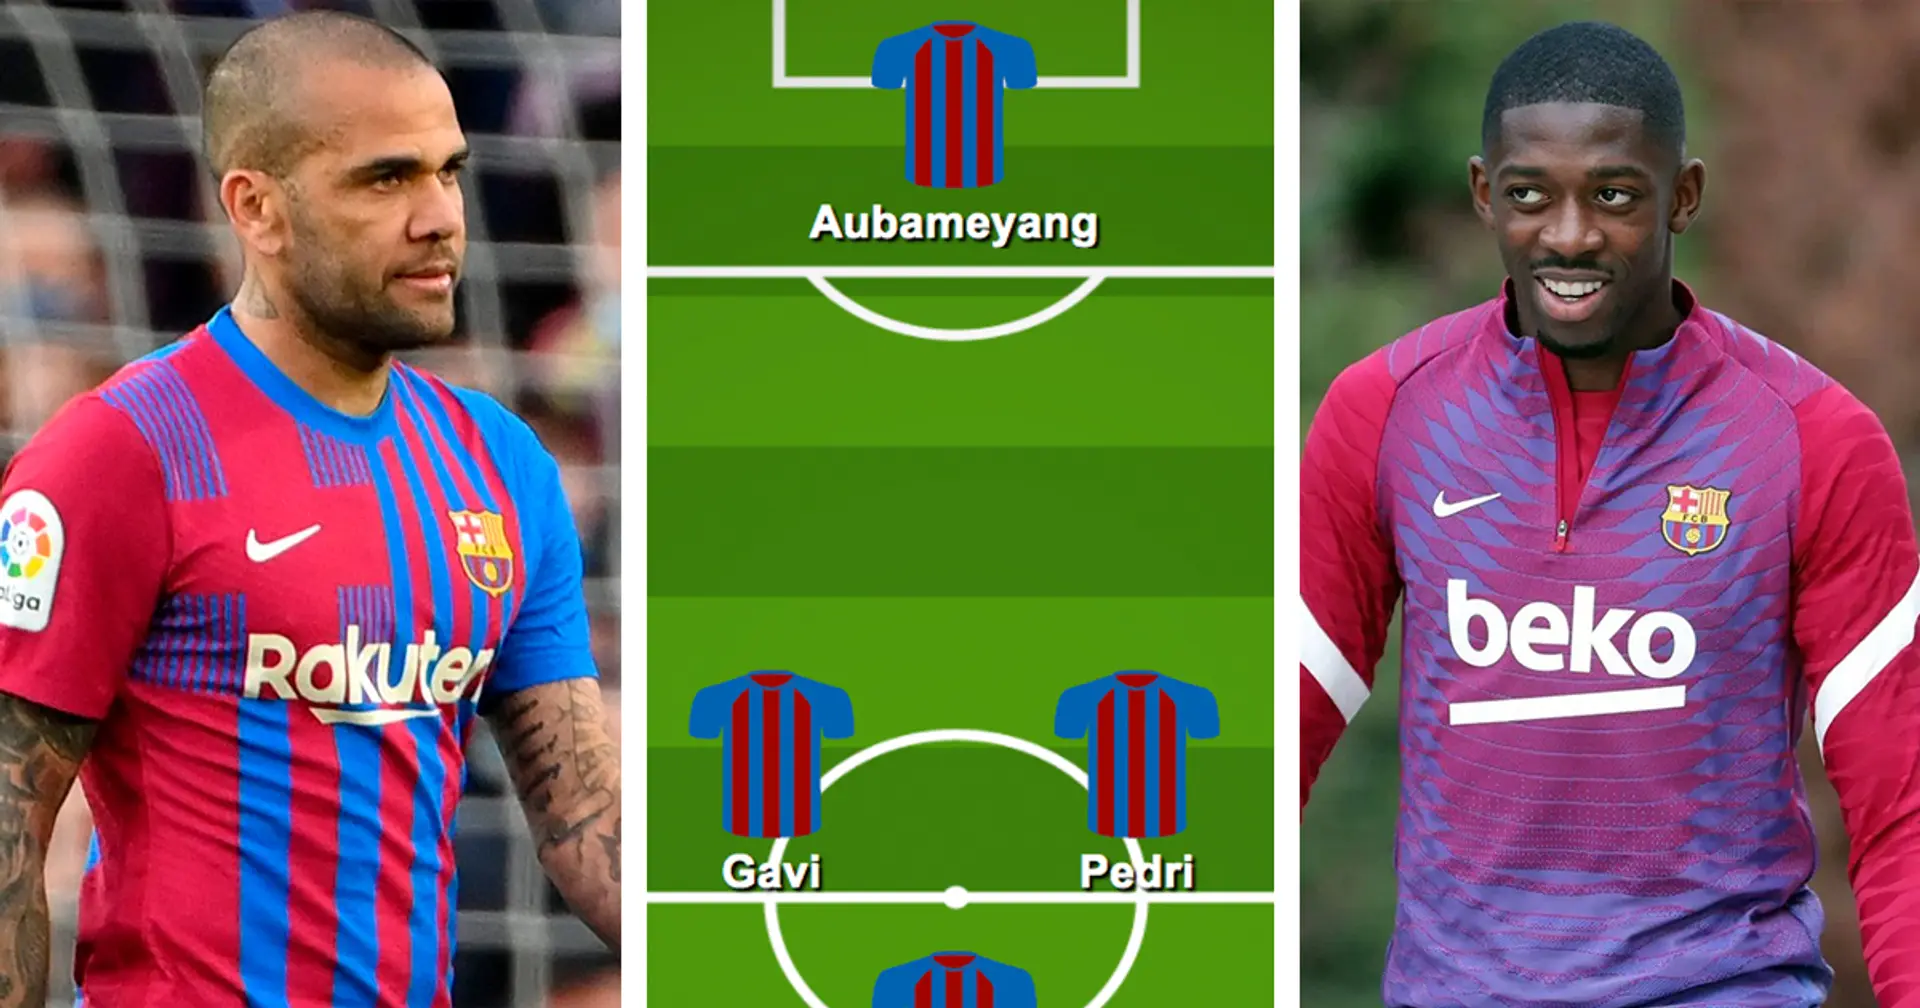 ¿Quién debería reemplazar a Alba? Elige tu XI favorito del Barça vs Athletic Club entre 3 opciones